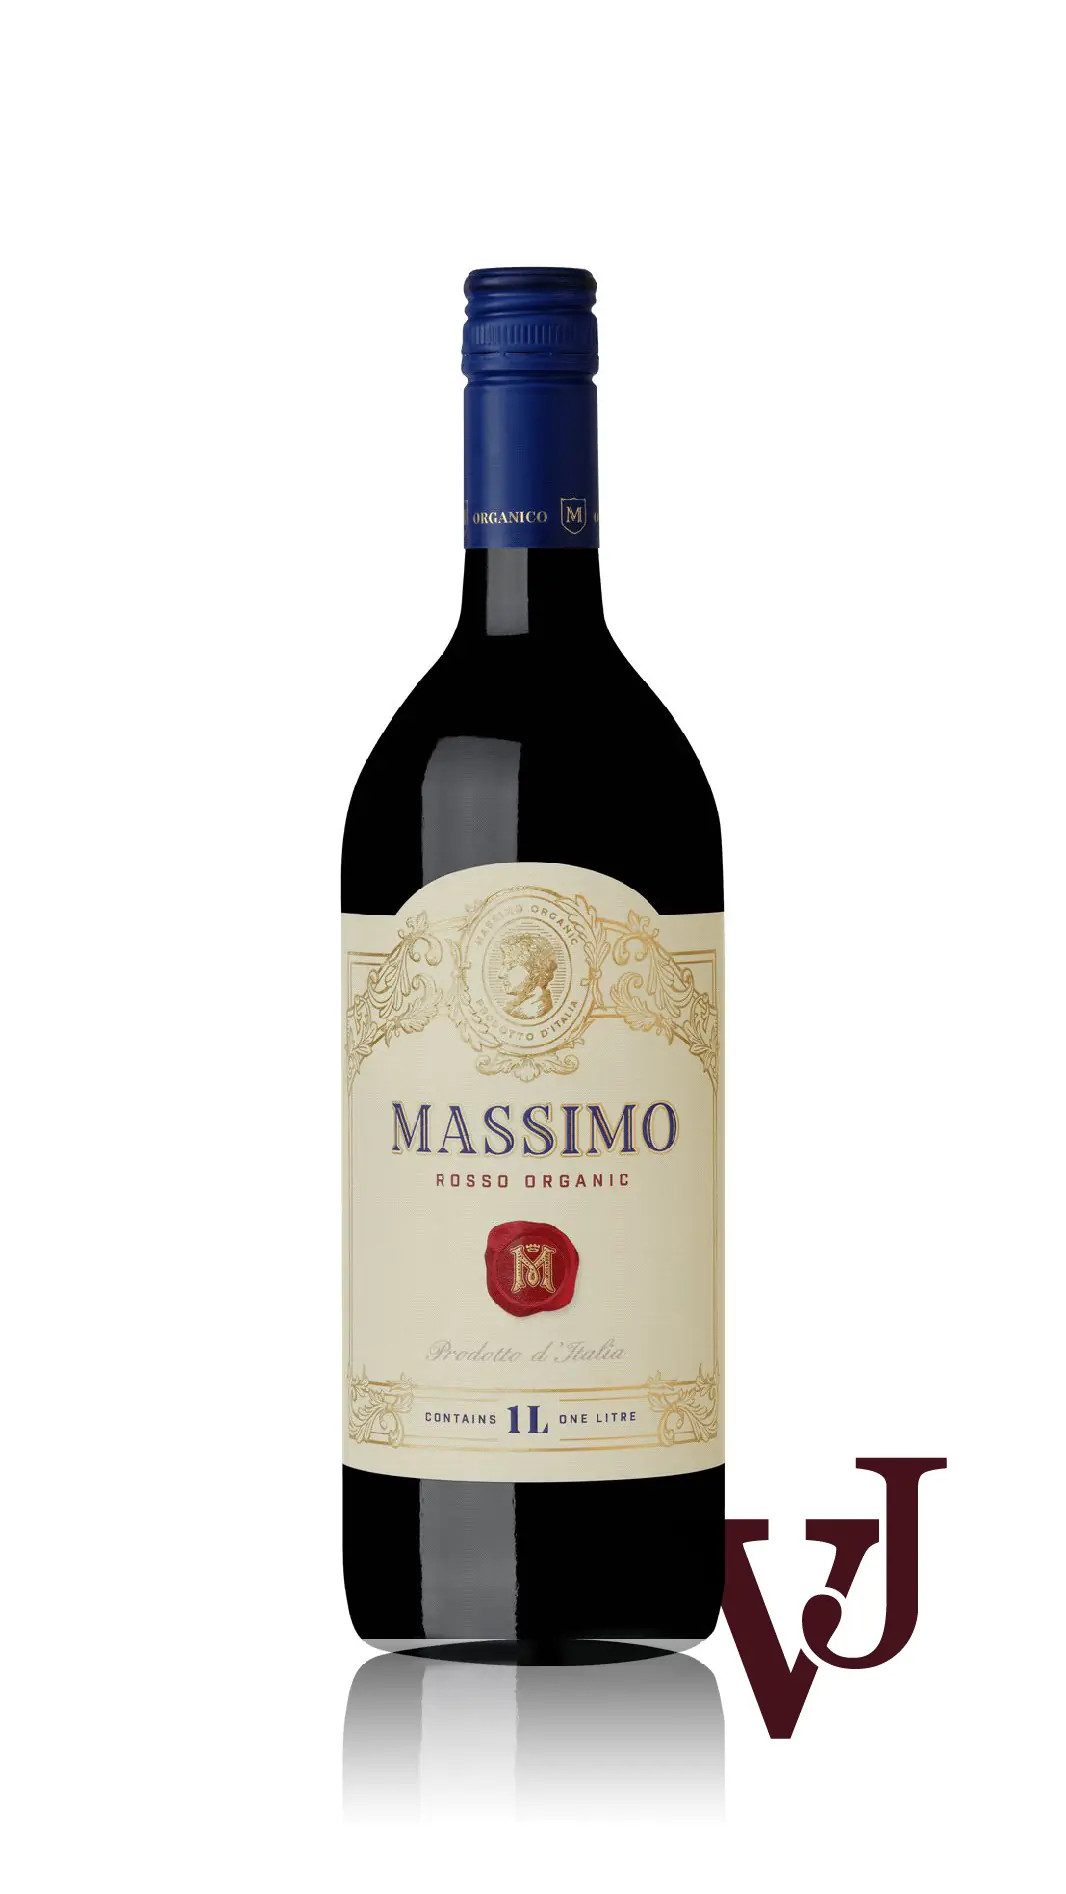 Rött Vin - Massimo Rosso Organico artikel nummer 7354601 från producenten Iconic Wines från Italien. - Vinjournalen.se